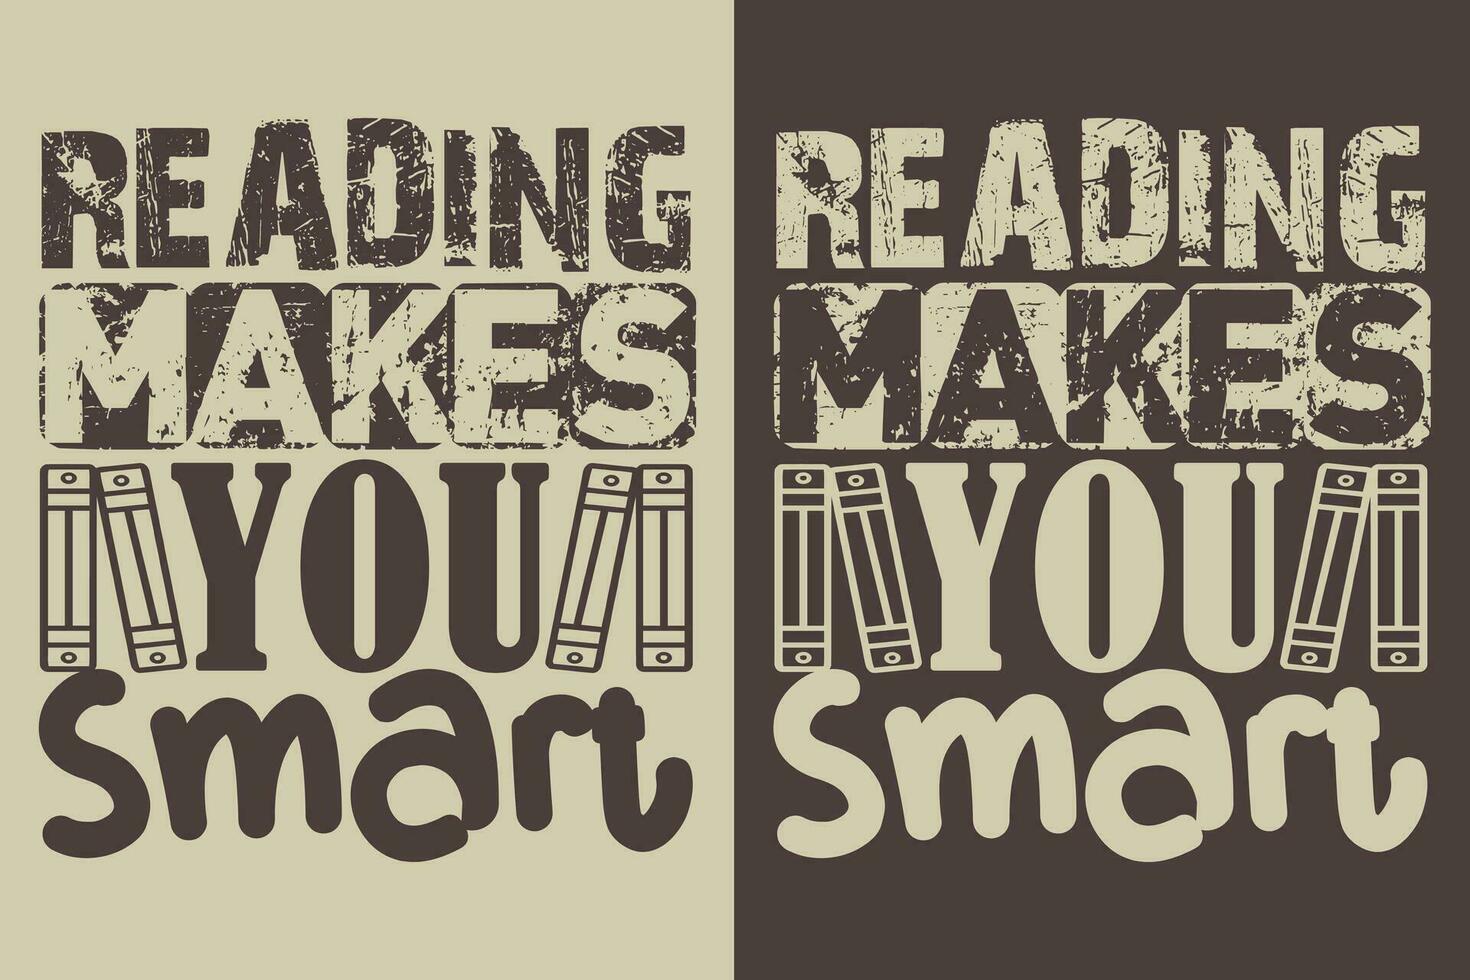 läsning gör du smart, bok älskare skjorta, litterär skjorta, bokälskande skjorta, läsning bok, bibliotekarie skjorta, bok läsare skjorta, inspirera skjorta, gåva för bibliotekarie, gåva för bok älskare vektor